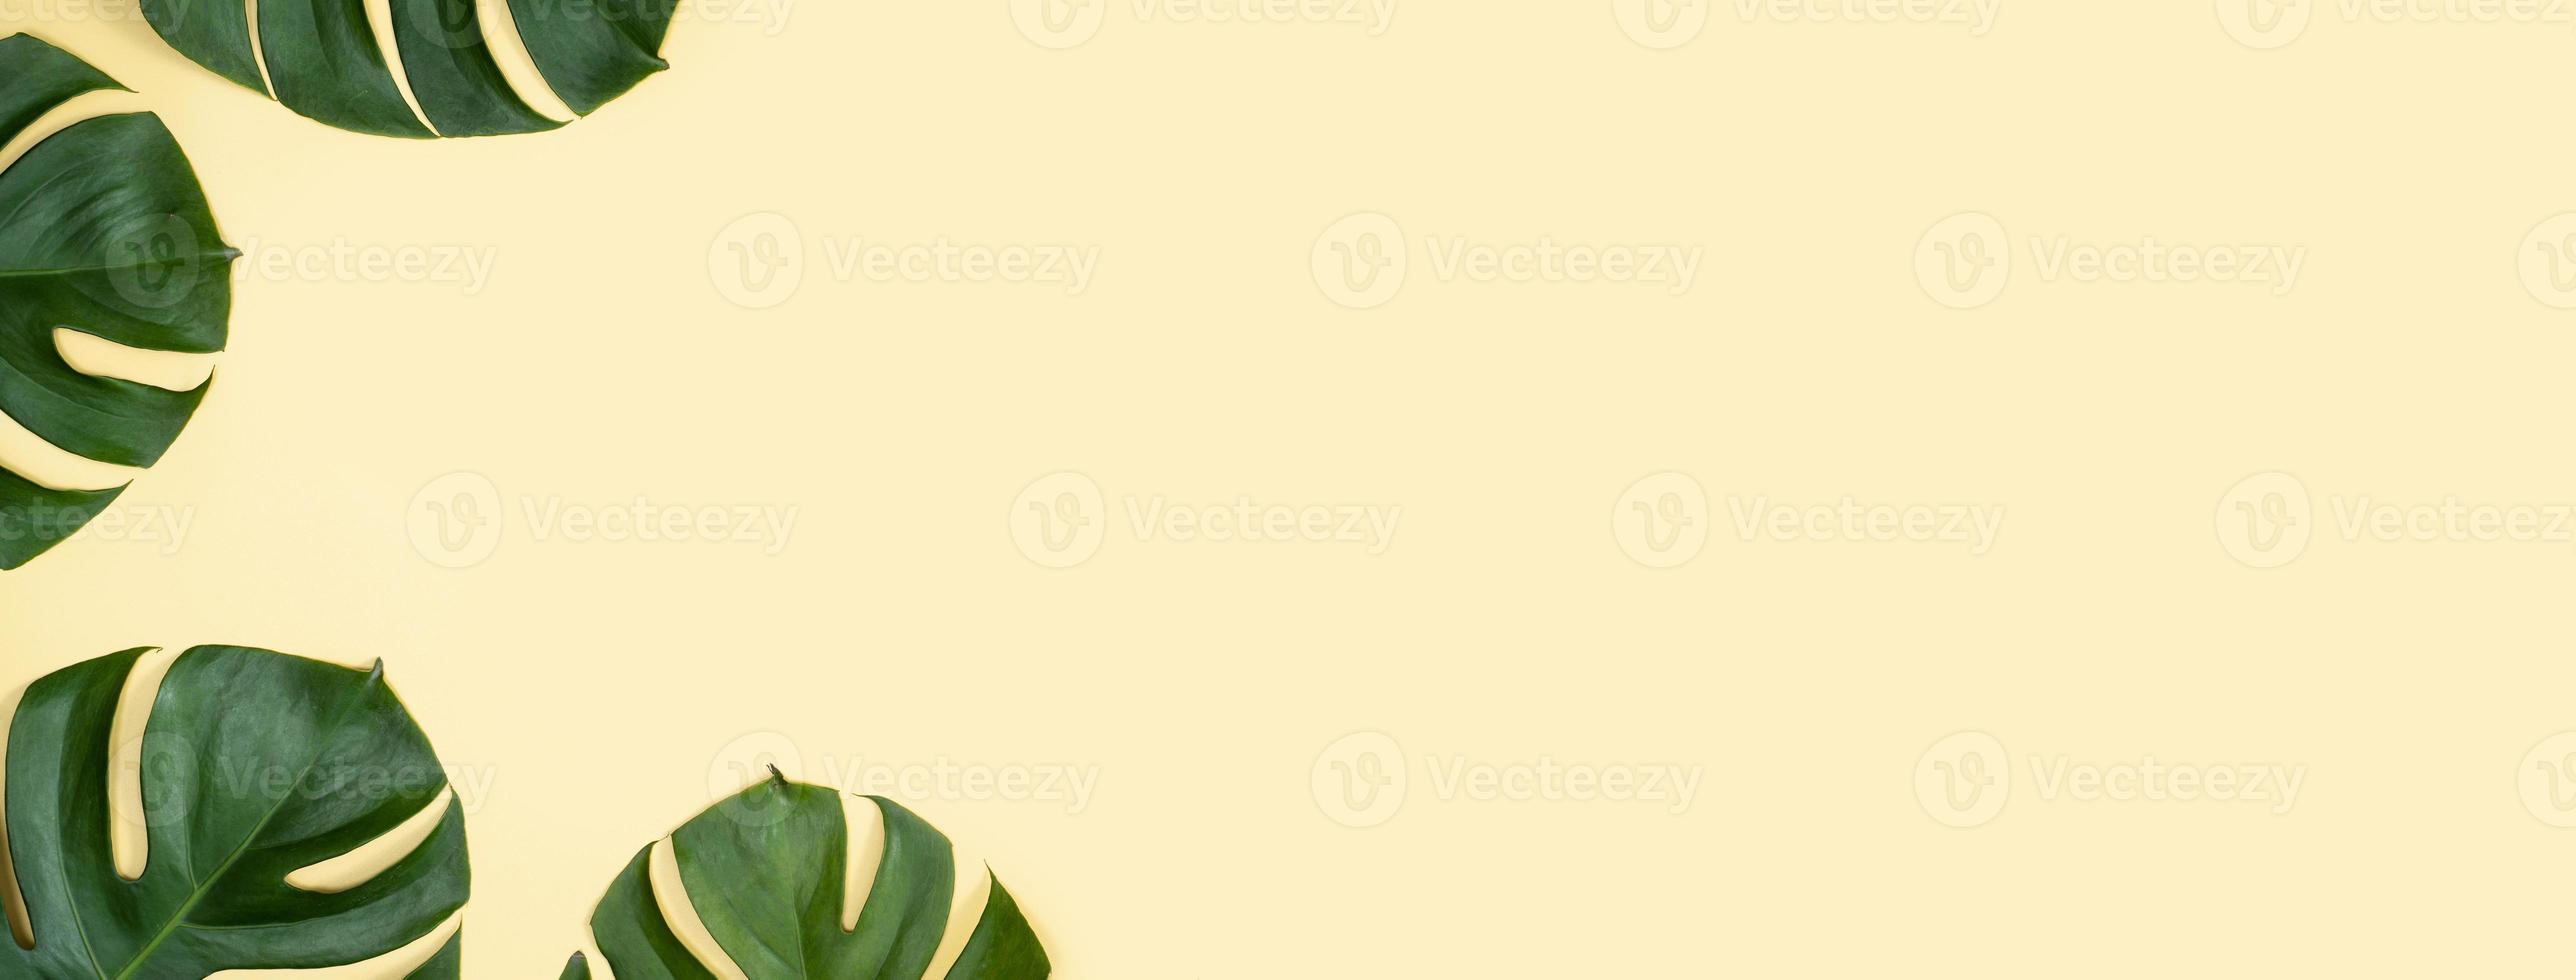 bela palmeira tropical monstera deixa ramo isolado em fundo amarelo pastel, vista superior, configuração plana, sobrecarga acima do conceito de design em branco de beleza de verão. foto